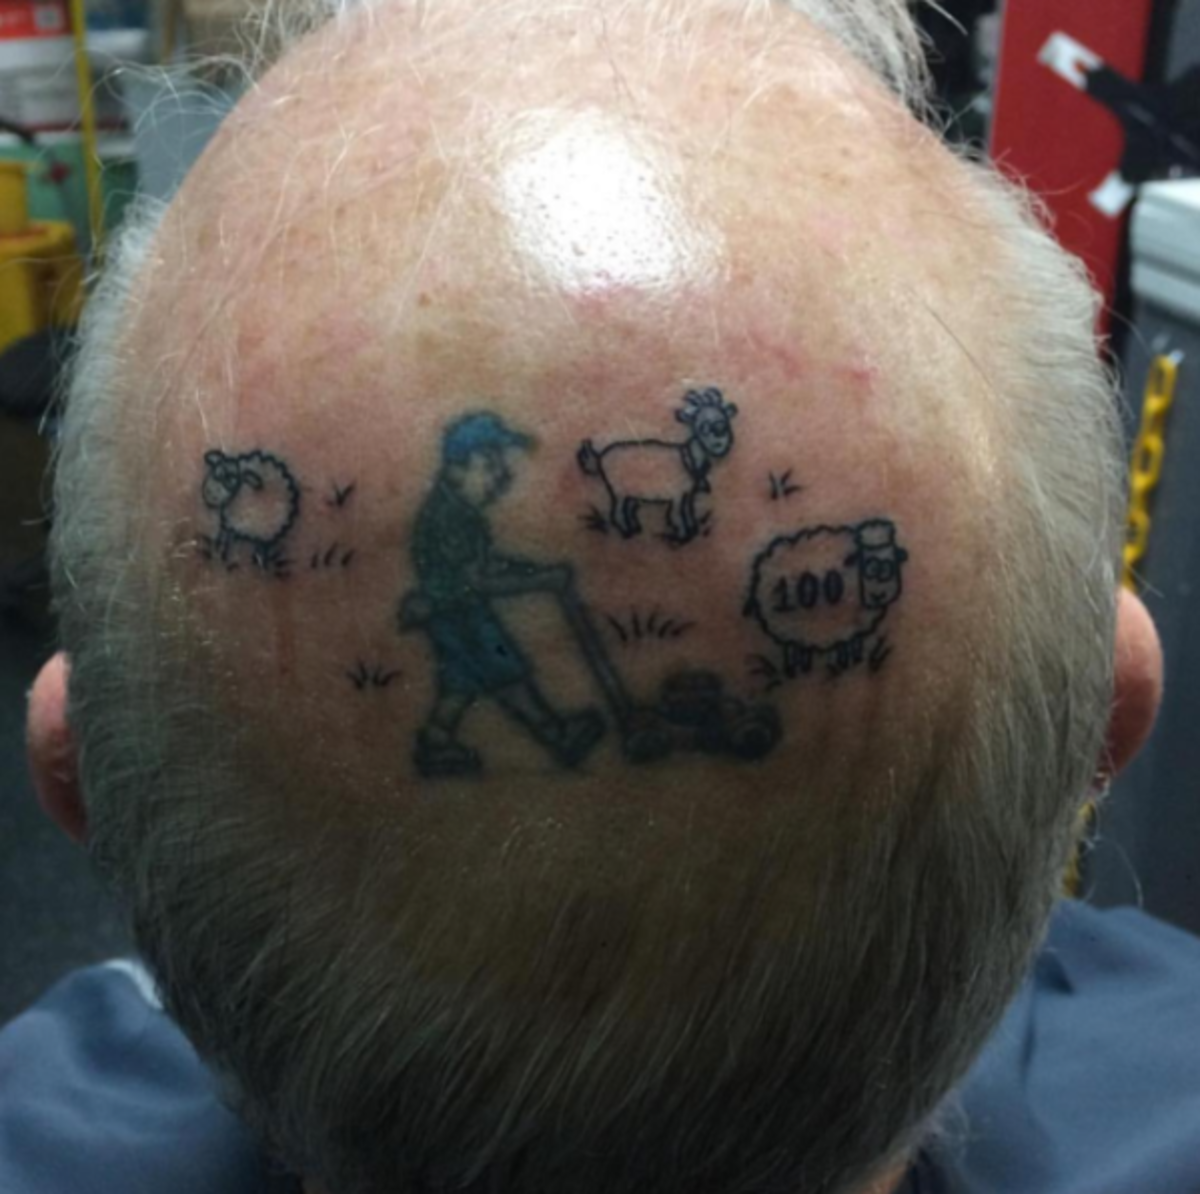 skaldet-mand-med-tatovering-på-hovedet